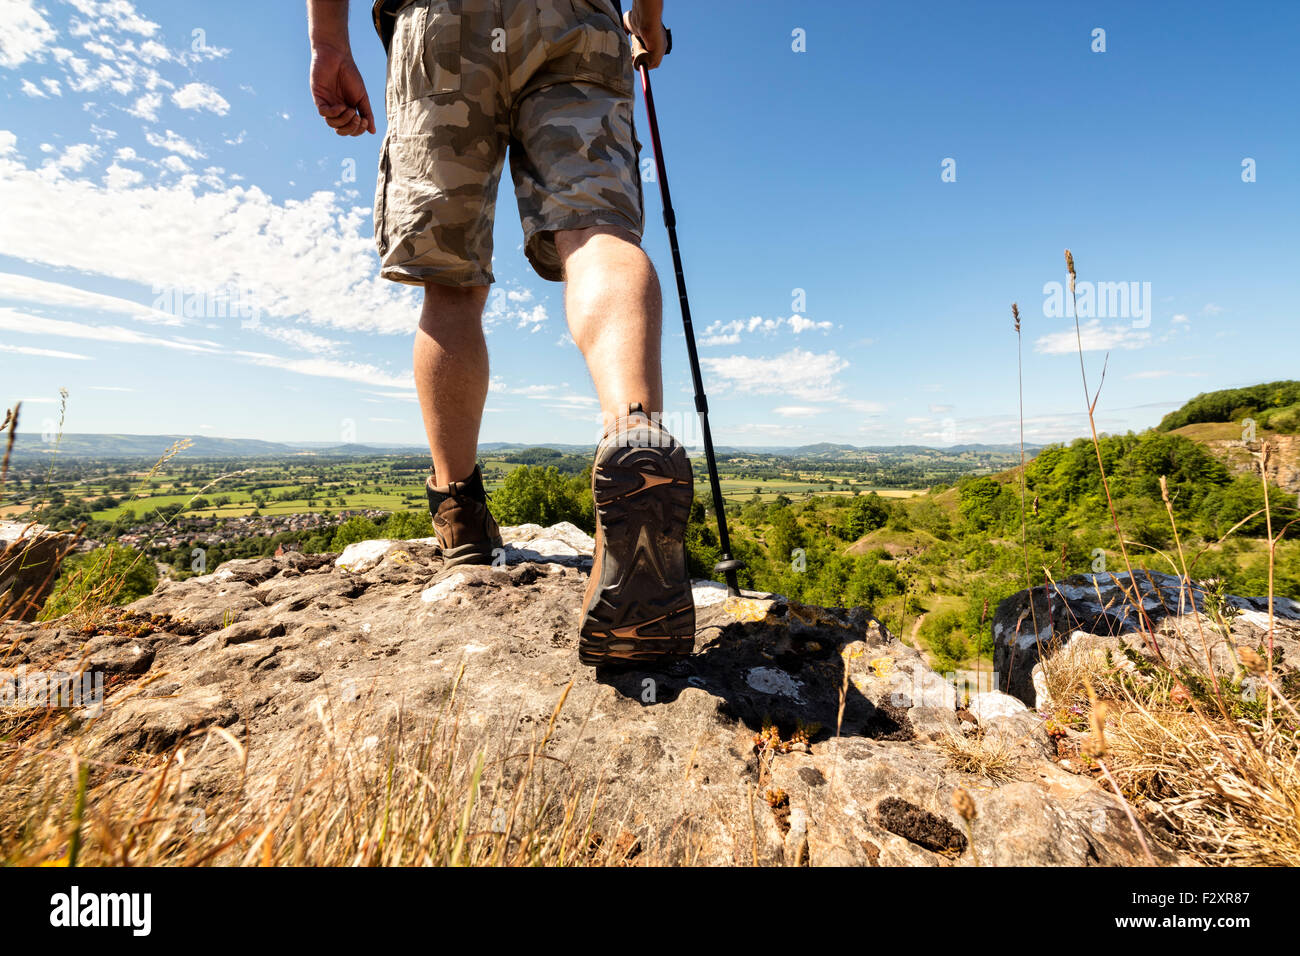 Escursionista escursionismo su un sentiero di montagna con panorami distanti di campagna in estate sole Foto Stock